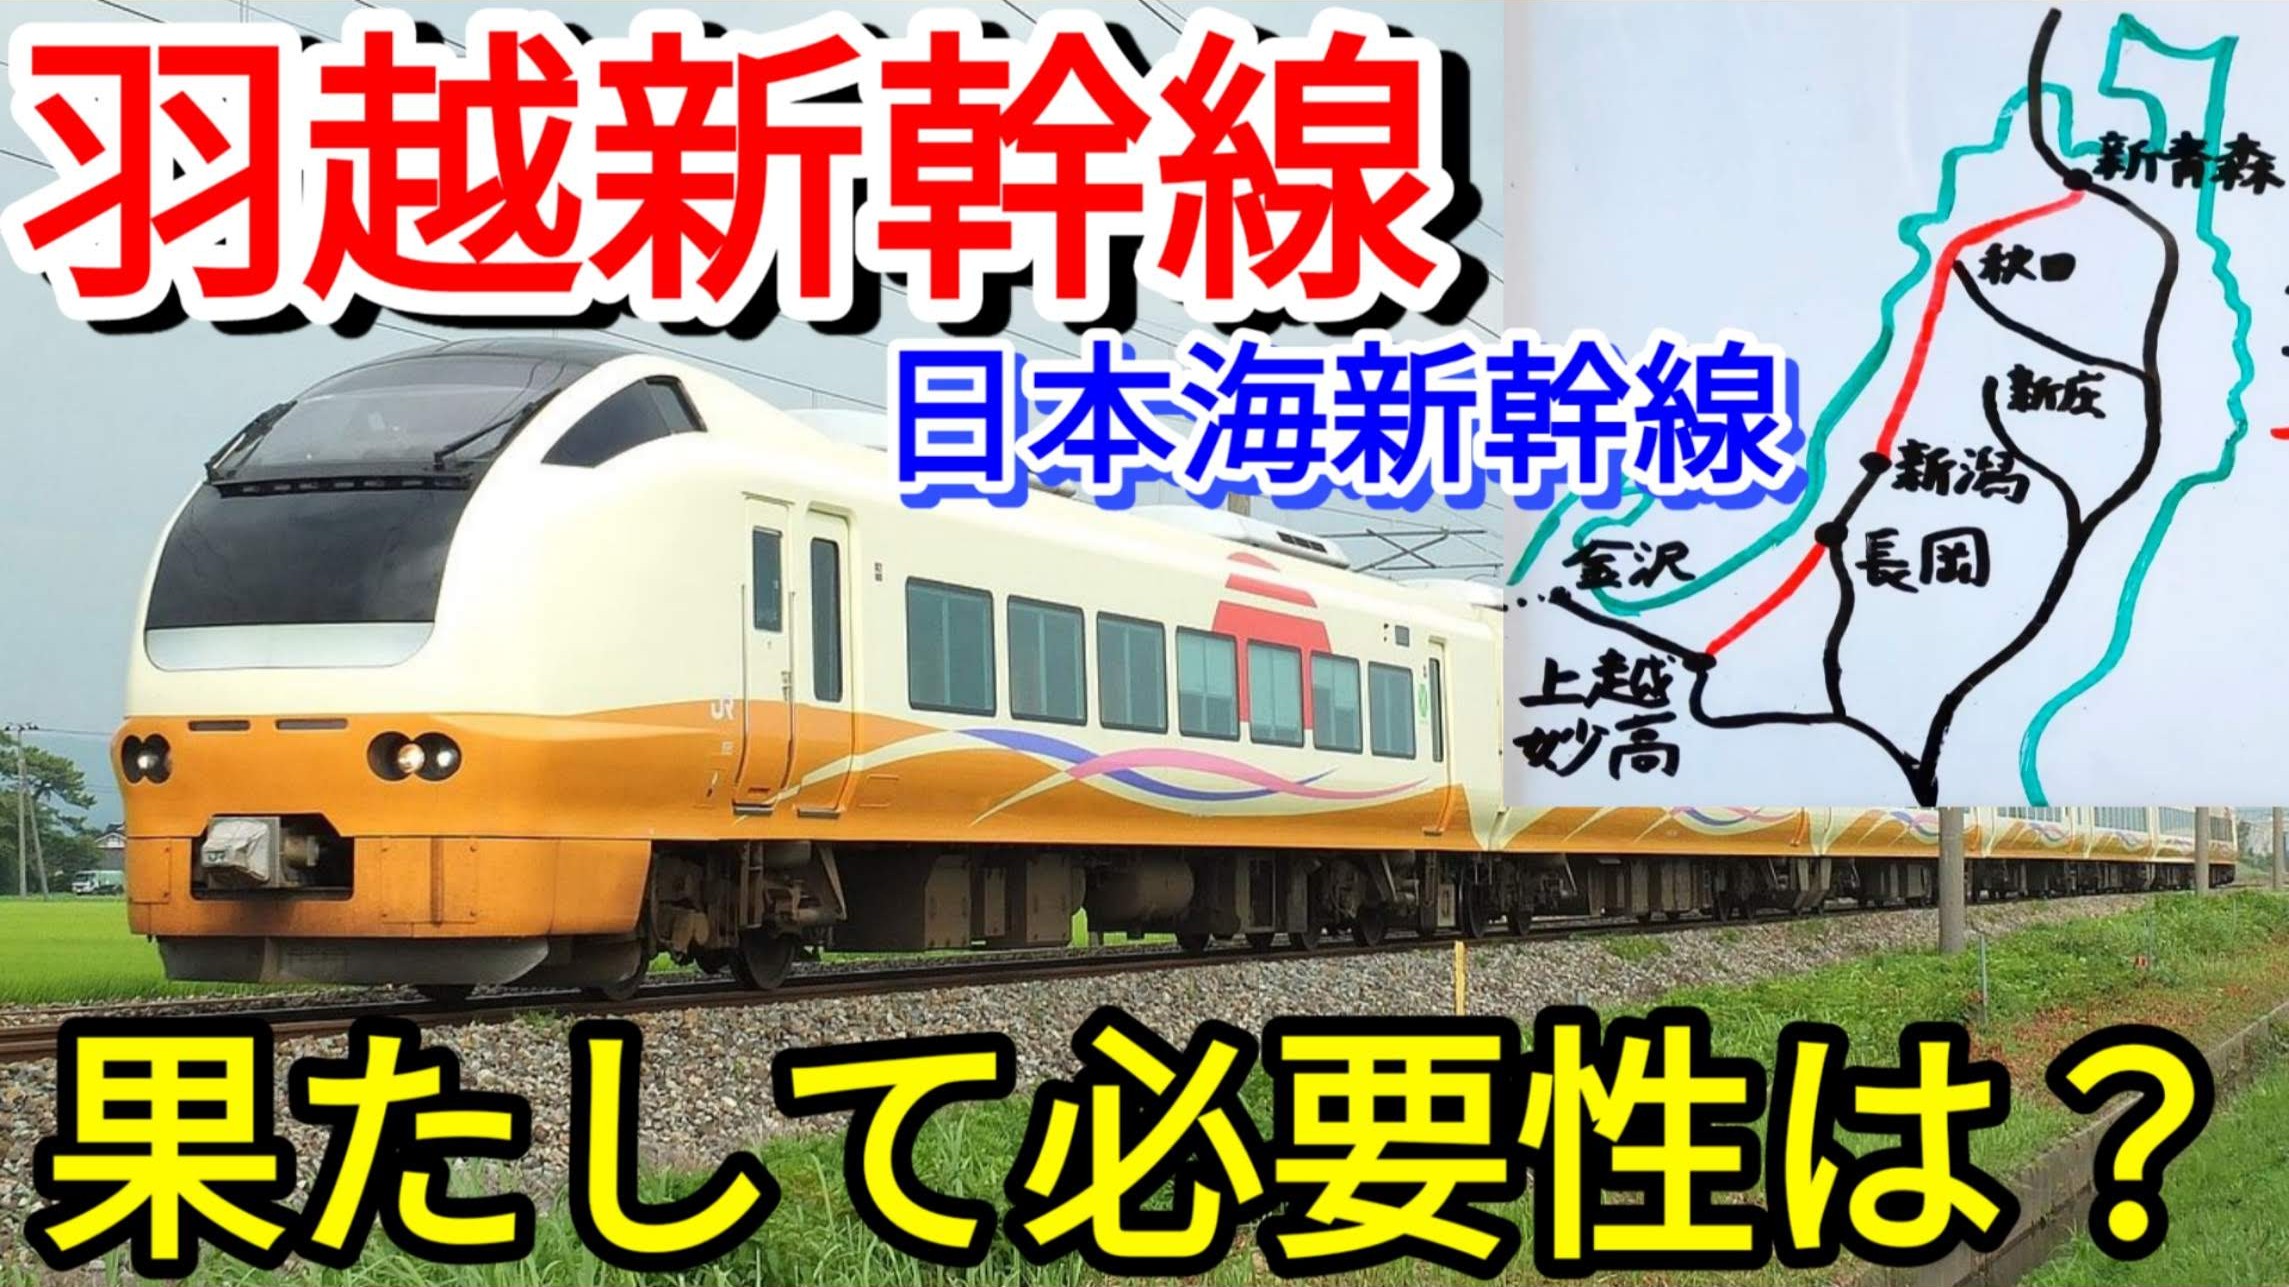 次期新幹線の候補 羽越新幹線は本当に必要なのか 羽越新幹線 前編 Pass Case